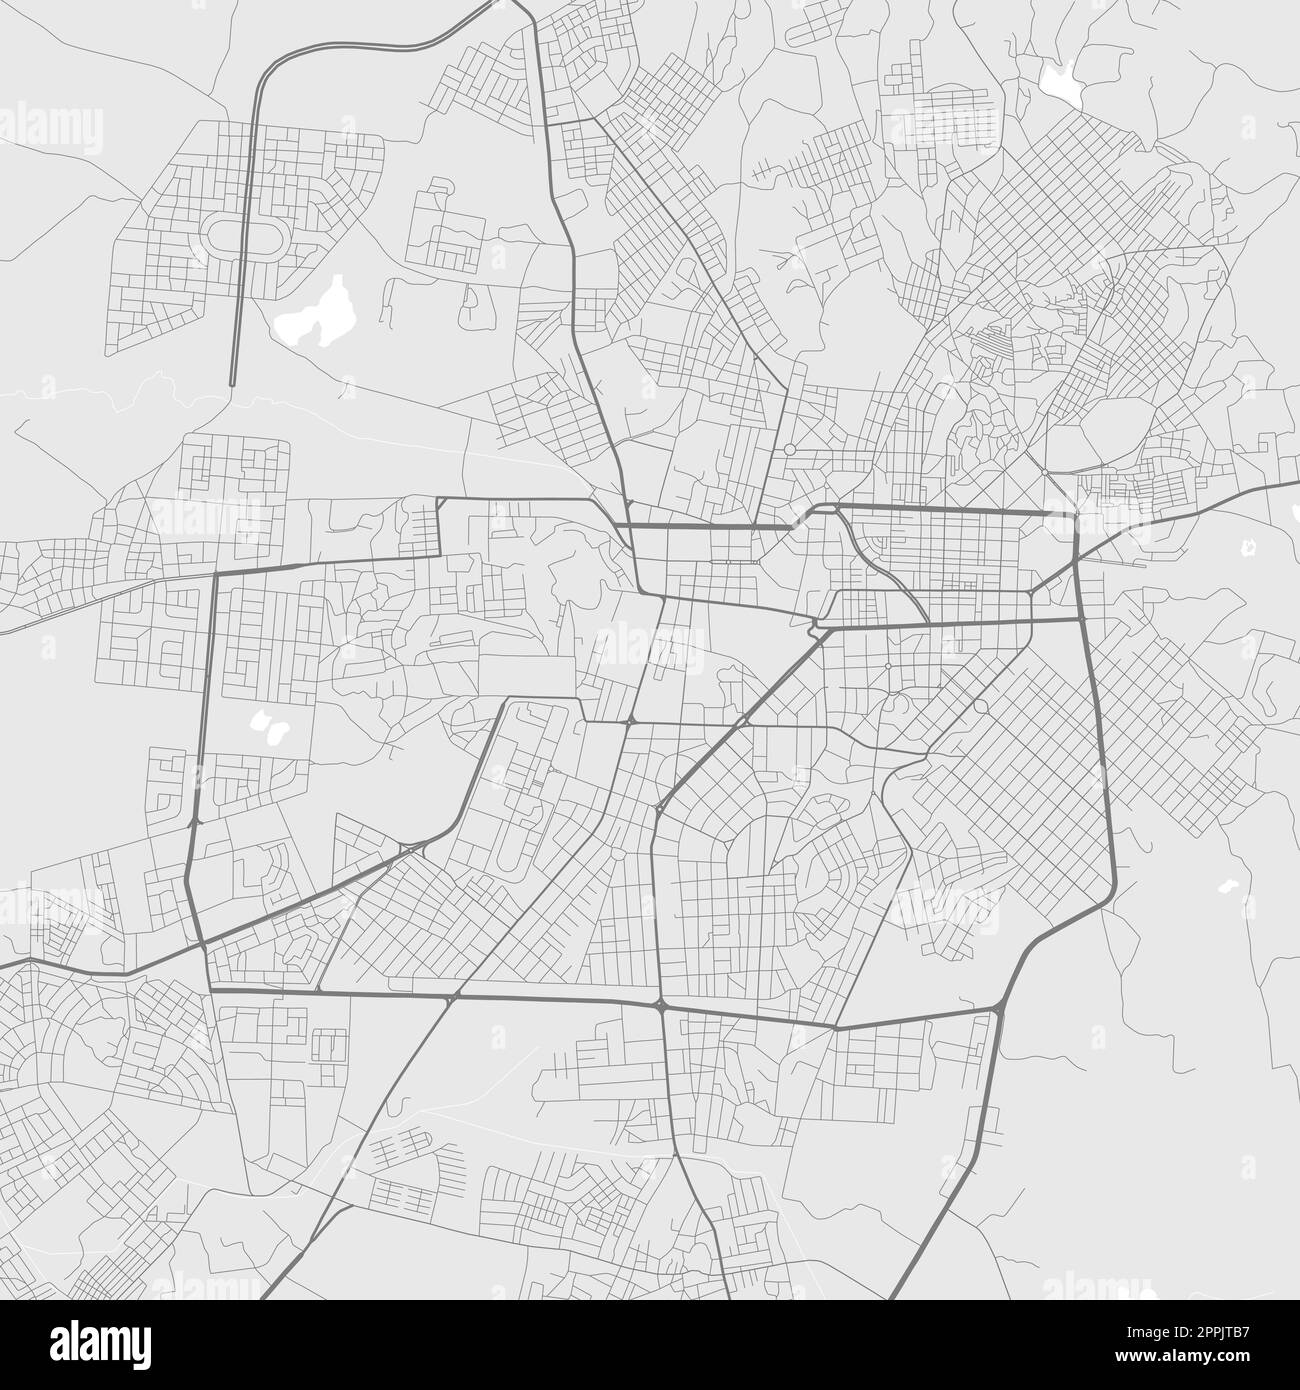 Carte de la ville d'Asmara, Erythrée. Affiche urbaine noir et blanc. Carte routière d'Asmera avec vue sur la région métropolitaine. Illustration de Vecteur